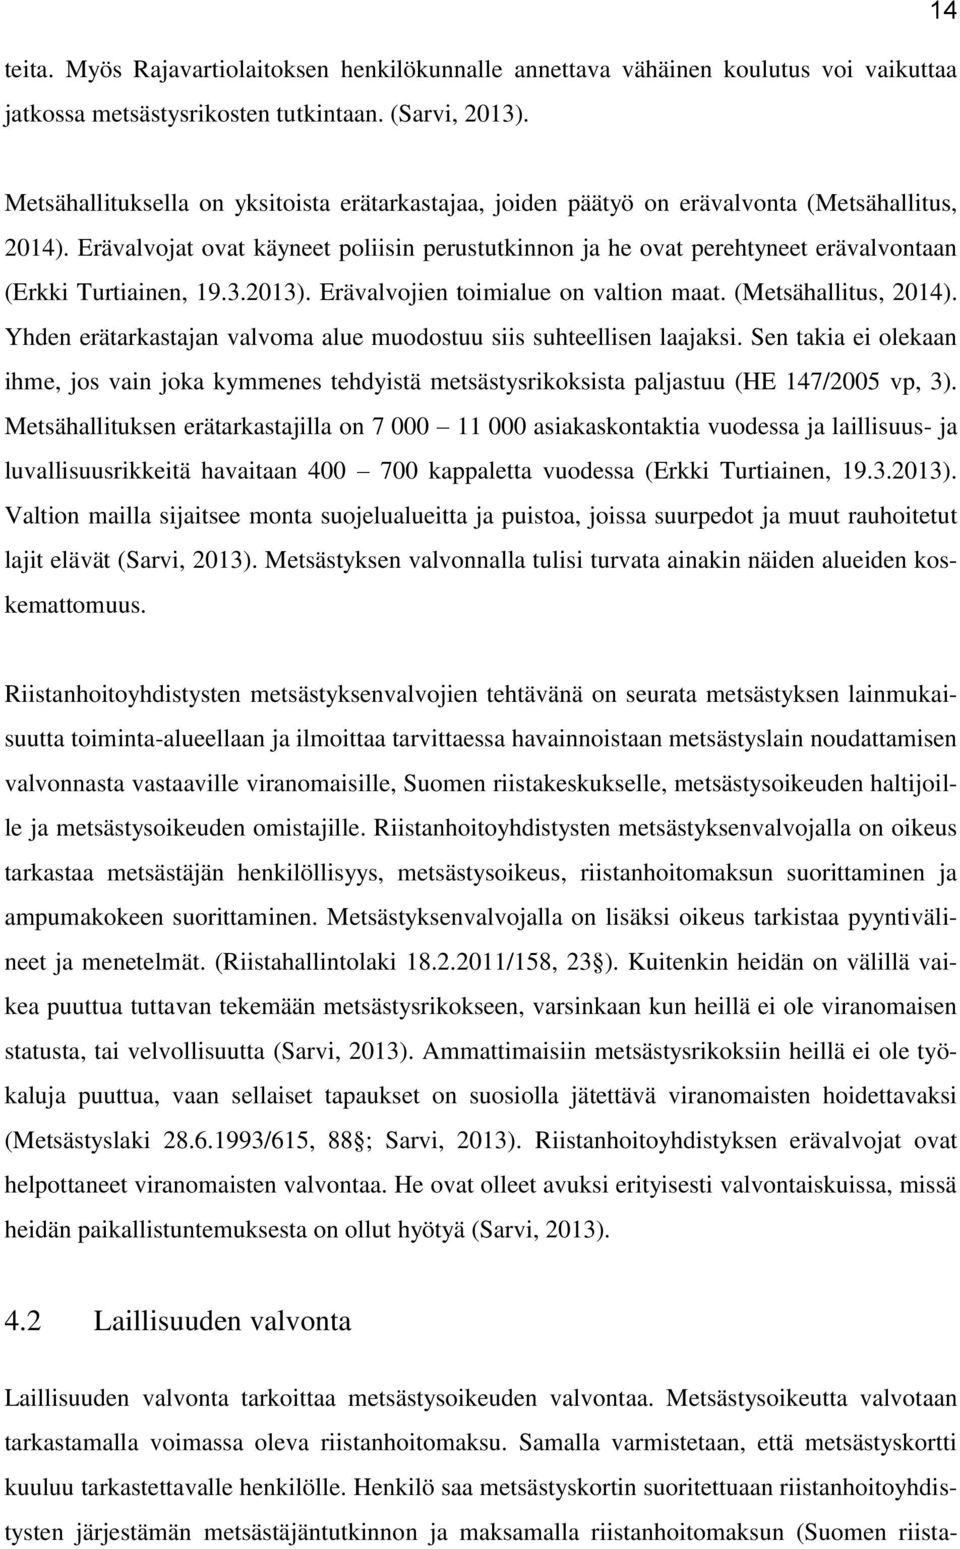 Erävalvojat ovat käyneet poliisin perustutkinnon ja he ovat perehtyneet erävalvontaan (Erkki Turtiainen, 19.3.2013). Erävalvojien toimialue on valtion maat. (Metsähallitus, 2014).